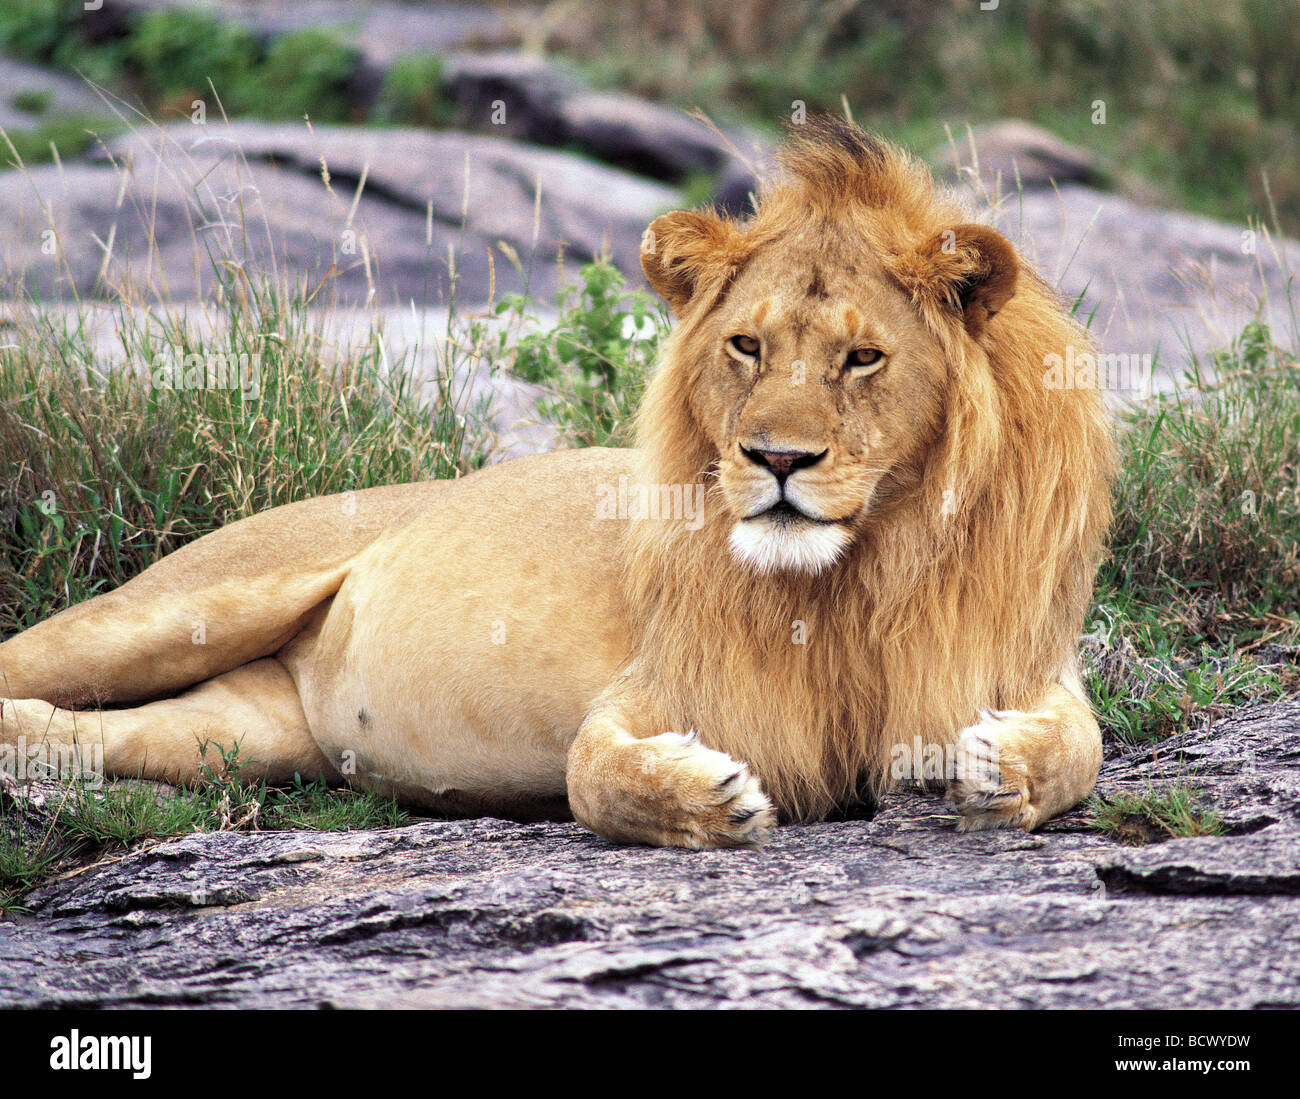 Homme Lion à crinière fine couché à distance dans le Parc National du Serengeti Tanzanie Afrique de l'Est Banque D'Images